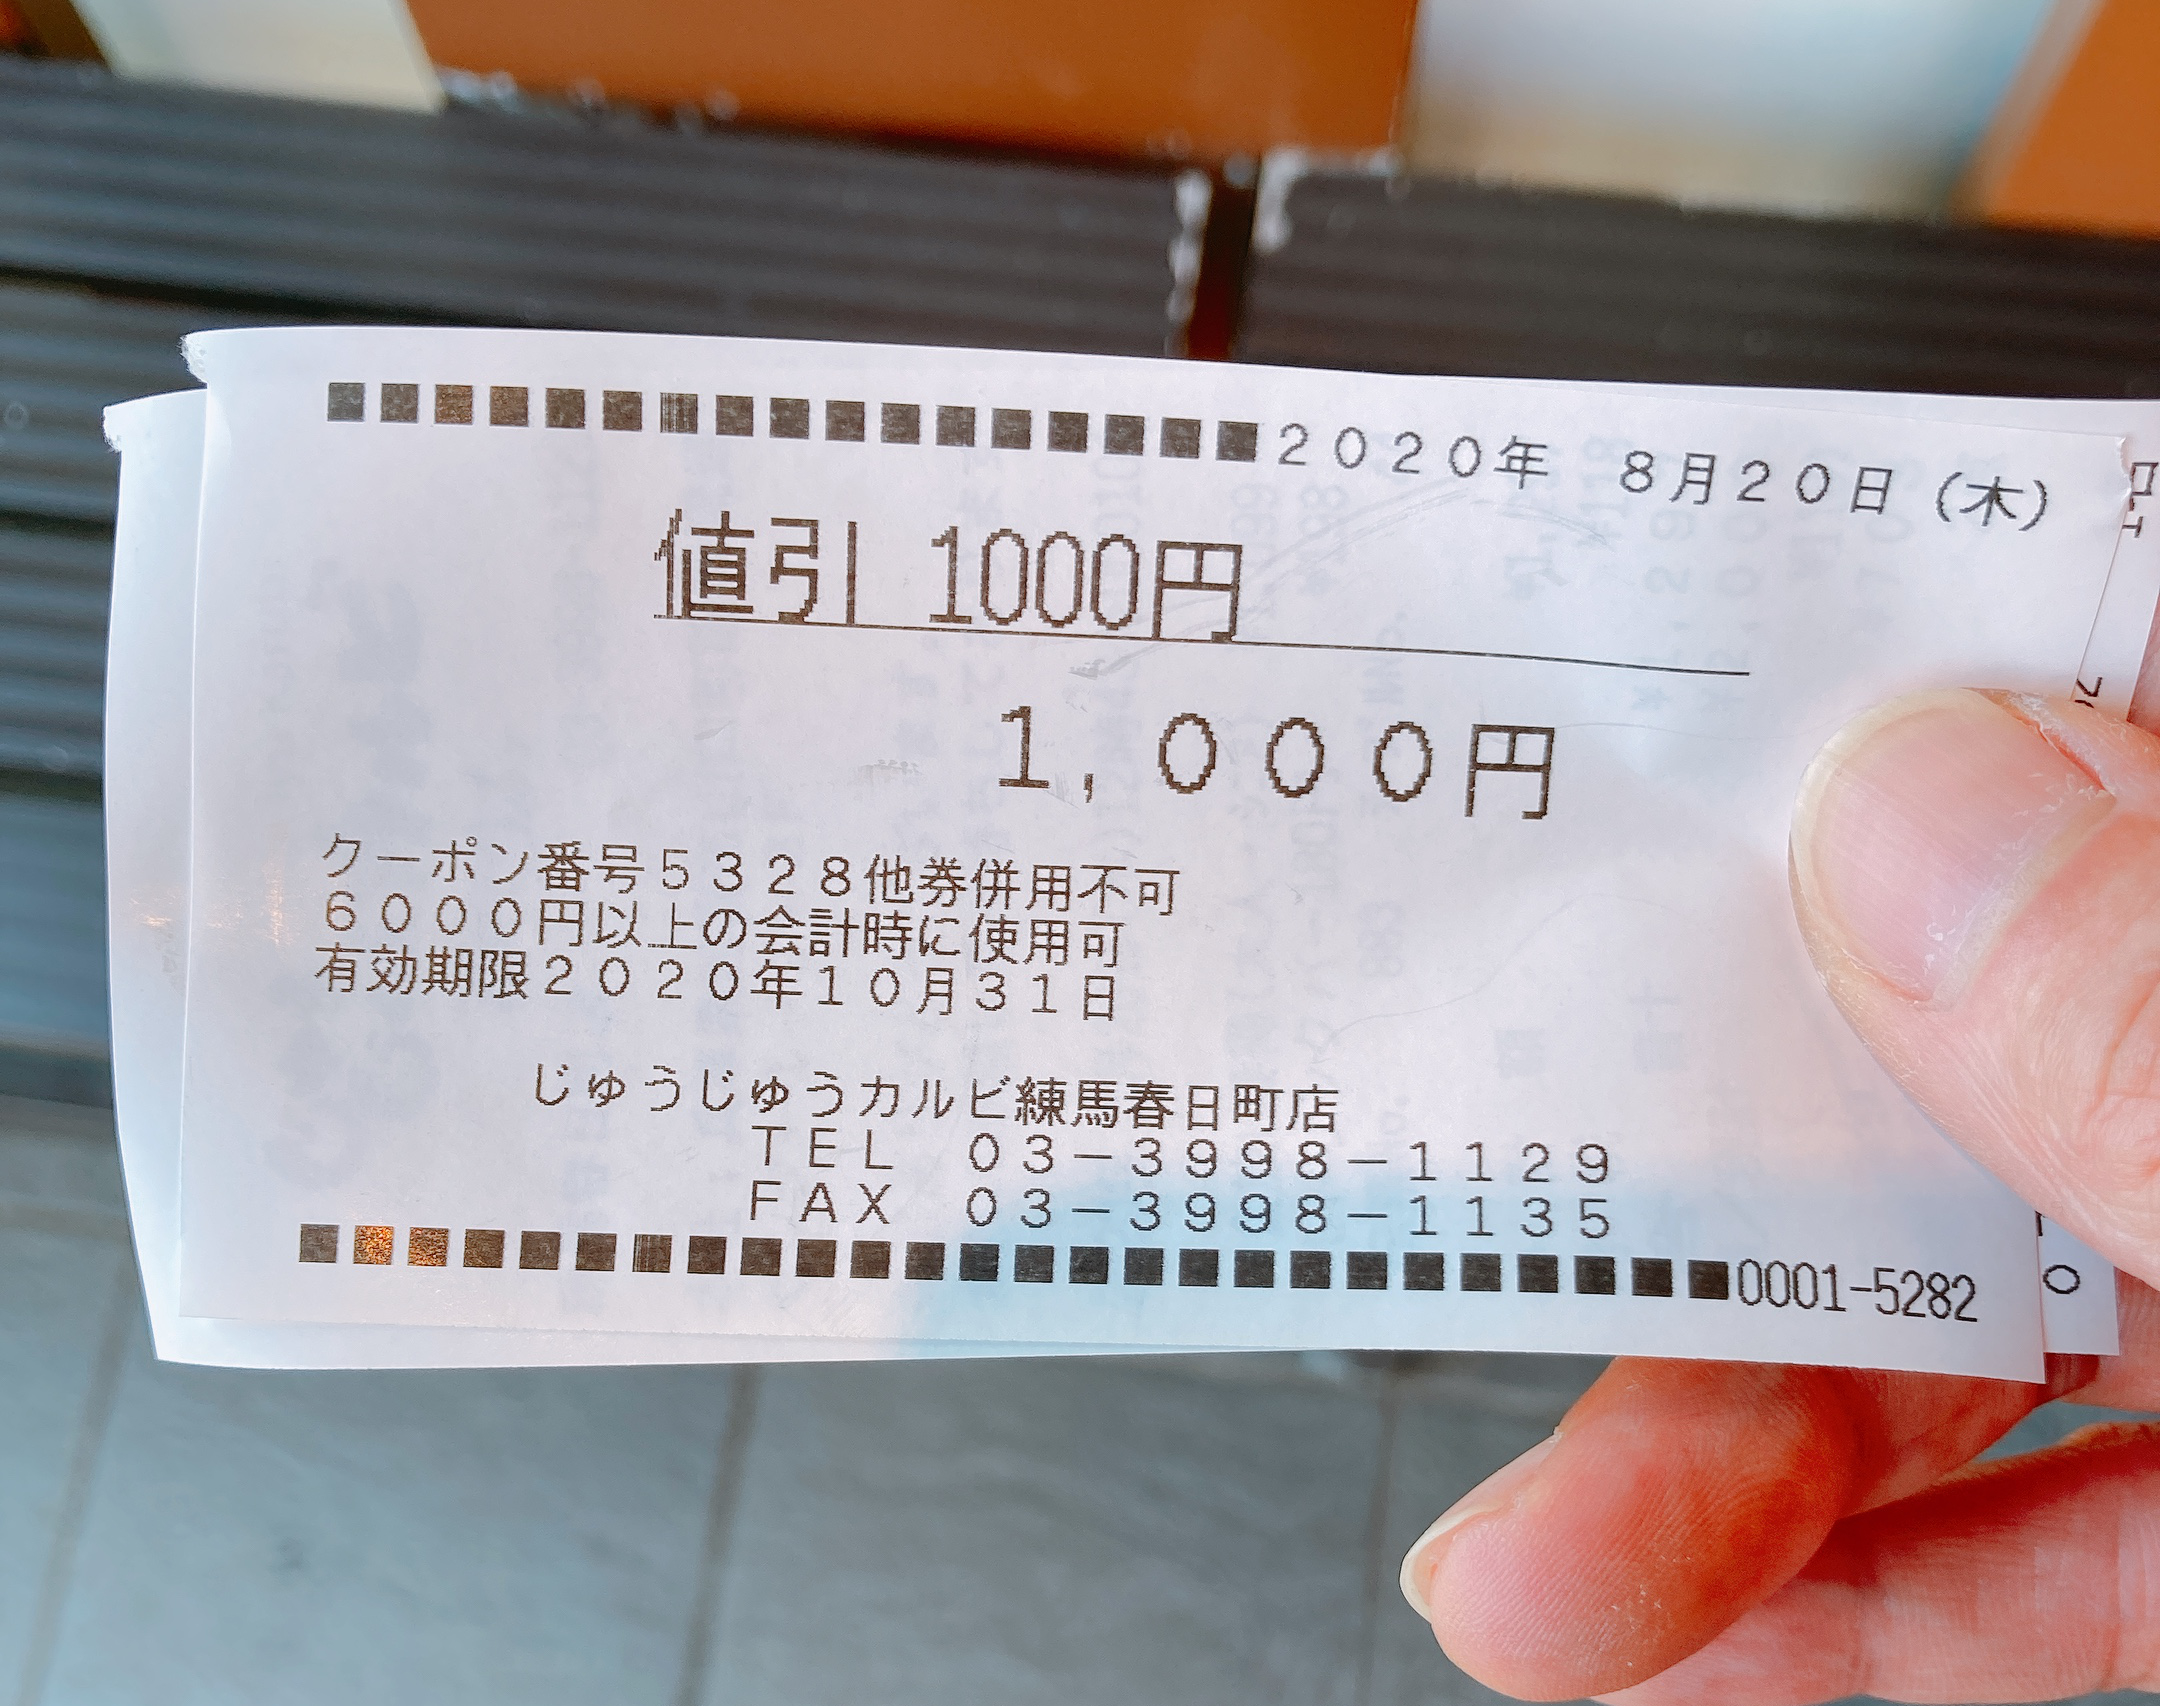 コスパ検証 ガスト系列の焼肉店 じゅうじゅうカルビ の999円焼肉食べ放題ランチはお得なのか 最後の最後に驚いた ロケットニュース24